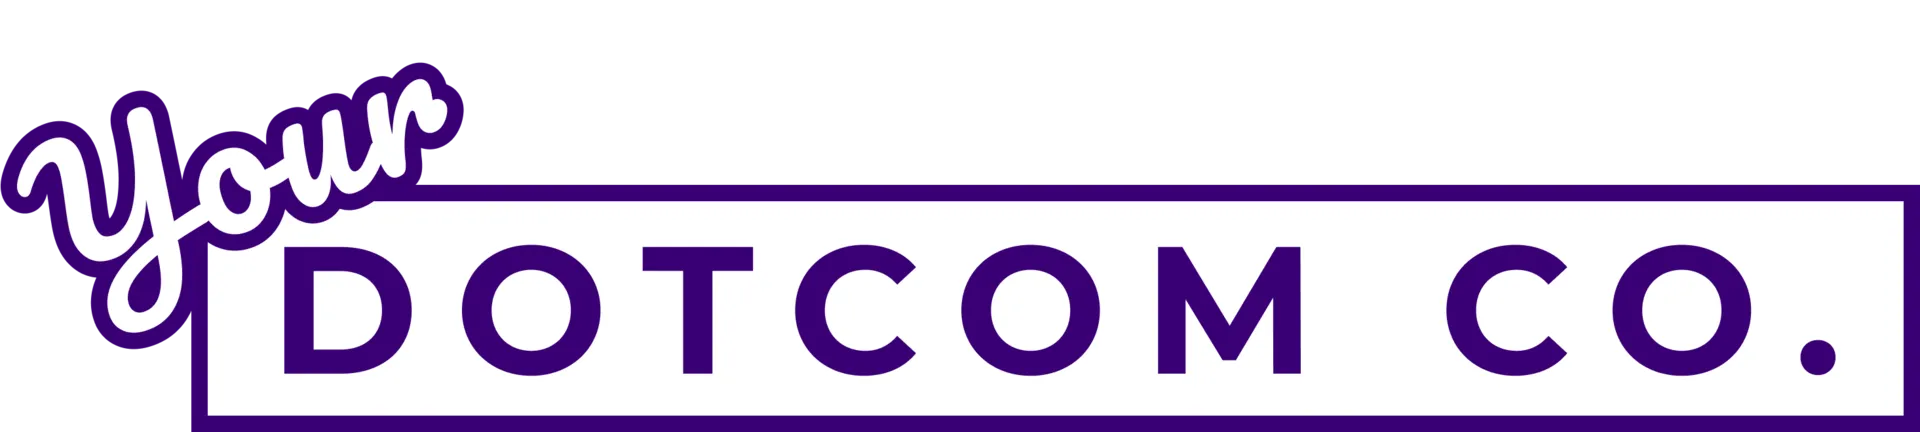 Your Dotcom Company